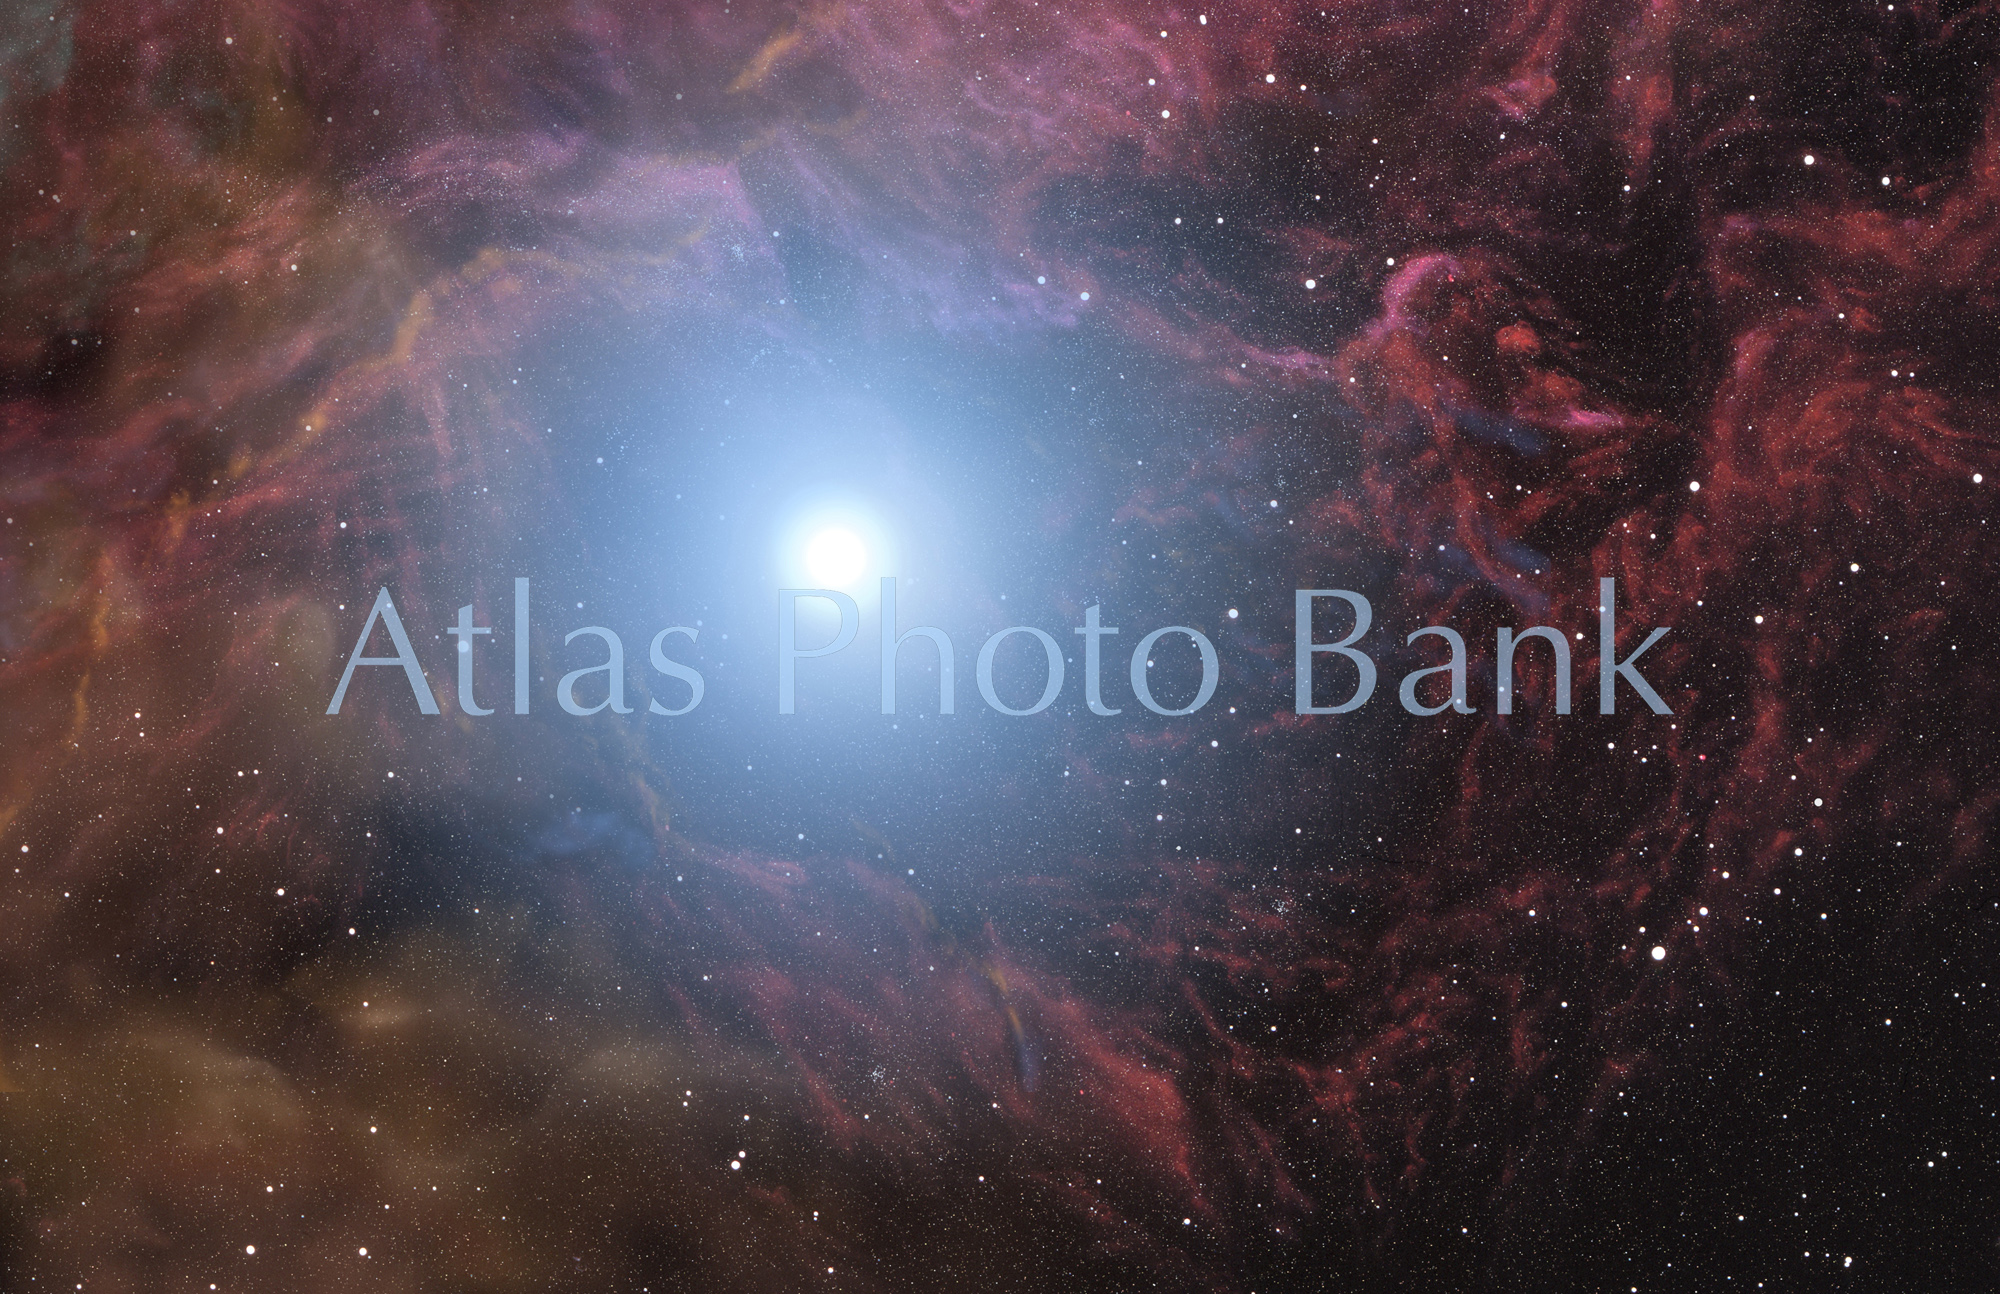 LS-036-カリフォルニア星雲の一部-カリフォルニア星雲内